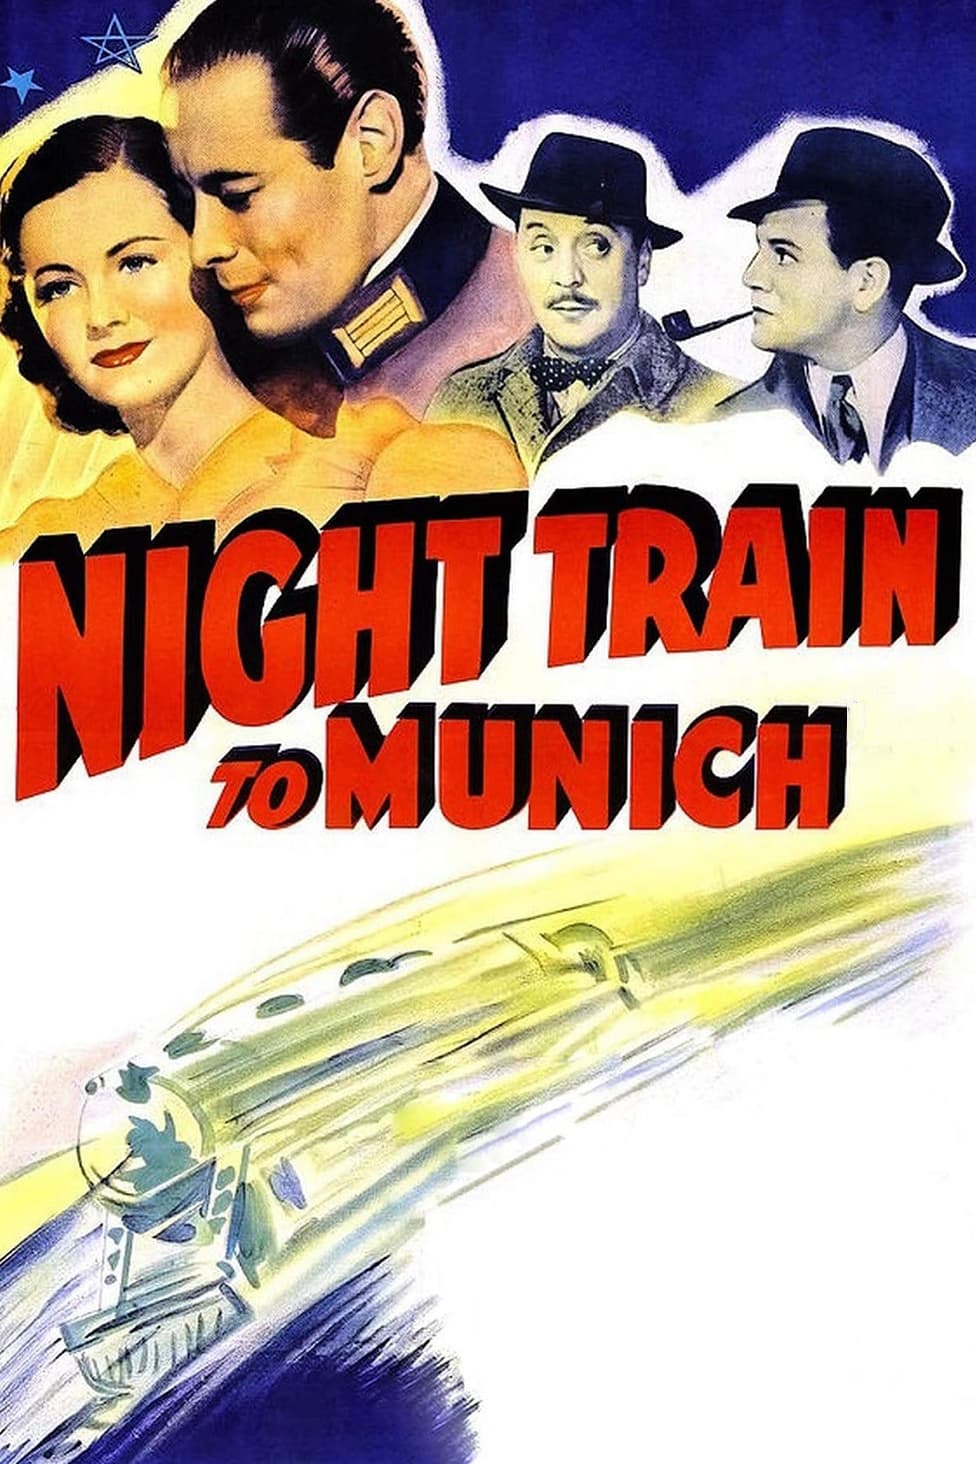 ミュンヘンへの夜行列車の画像